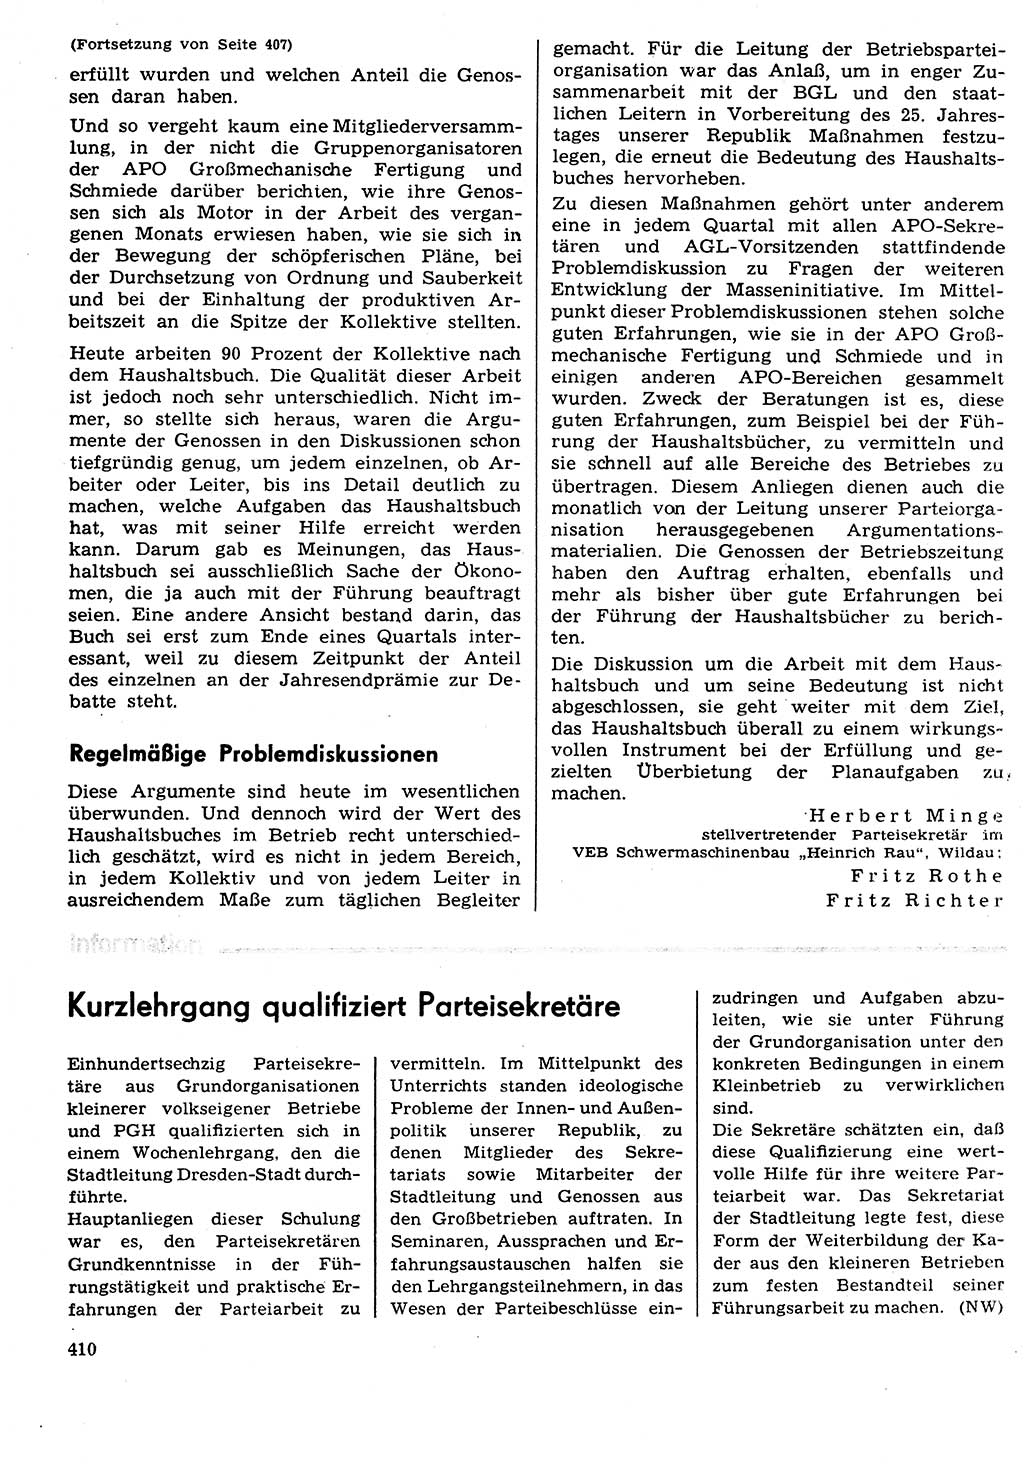 Neuer Weg (NW), Organ des Zentralkomitees (ZK) der SED (Sozialistische Einheitspartei Deutschlands) für Fragen des Parteilebens, 29. Jahrgang [Deutsche Demokratische Republik (DDR)] 1974, Seite 410 (NW ZK SED DDR 1974, S. 410)